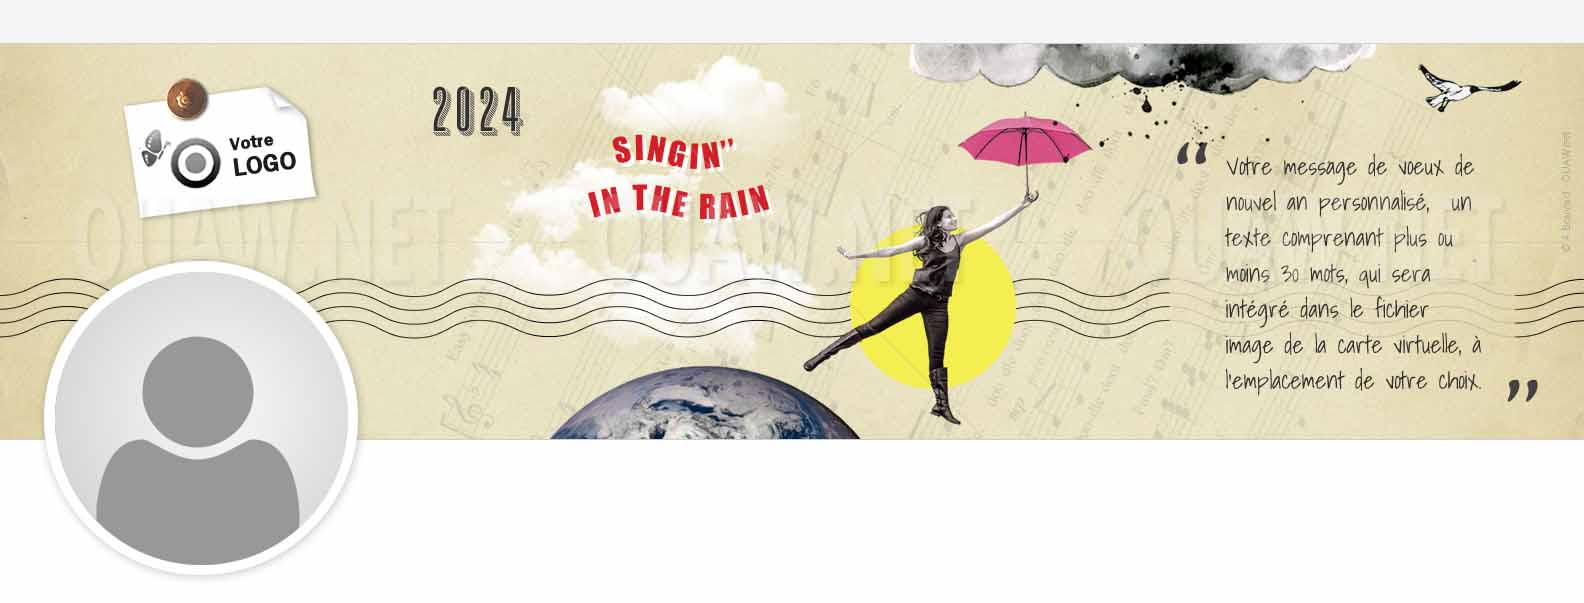 EBIN 149 - Bannière Linkedin Singin' in the rain